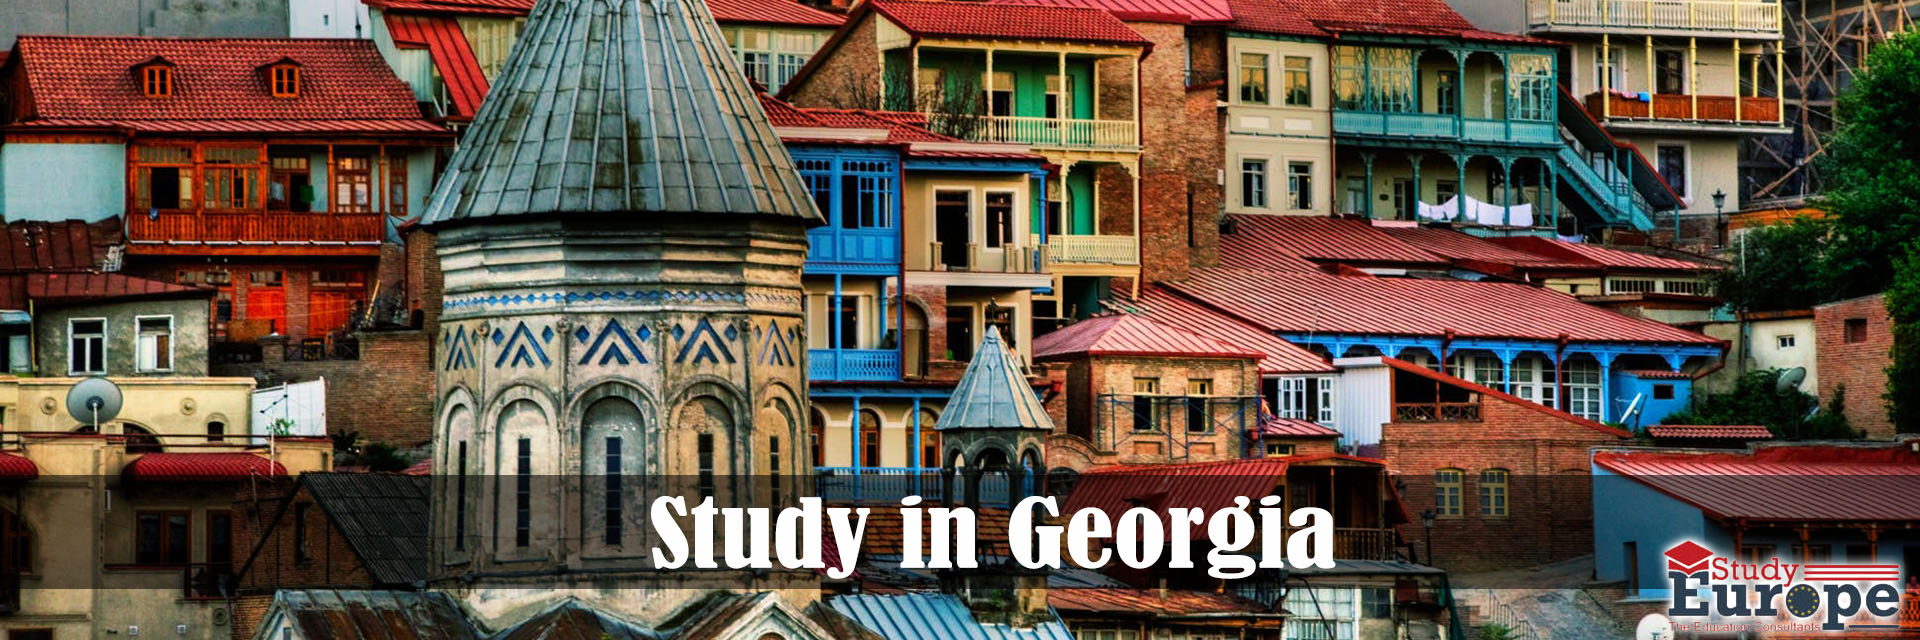 Study in Georgia